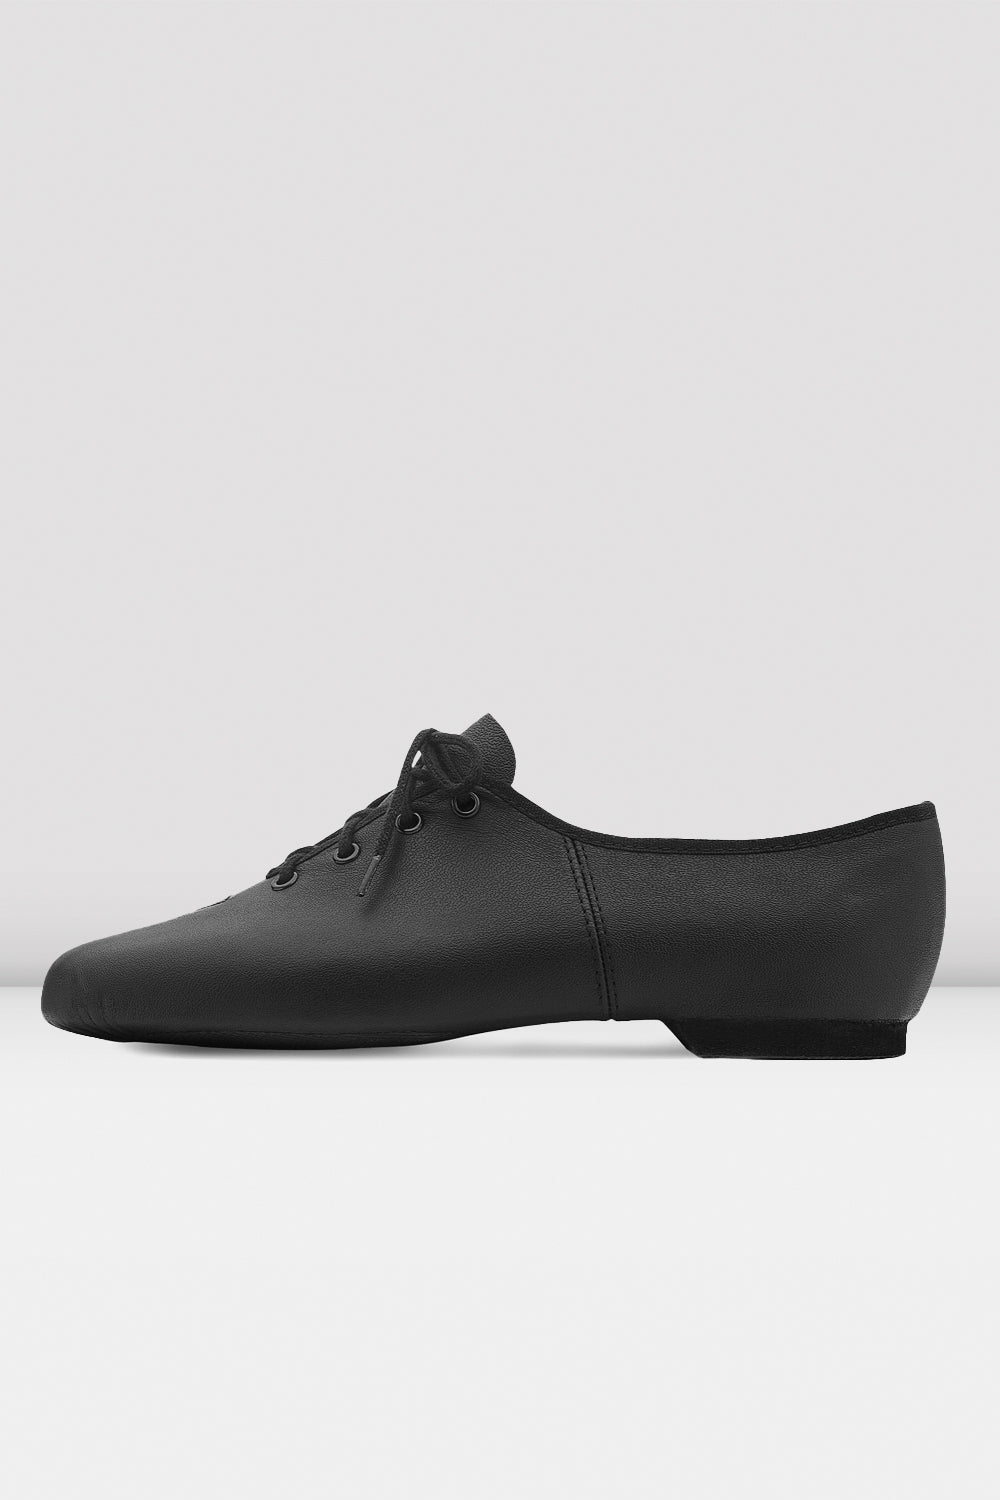 Bloch Pointe Shoe Kit - Economy Dancewear